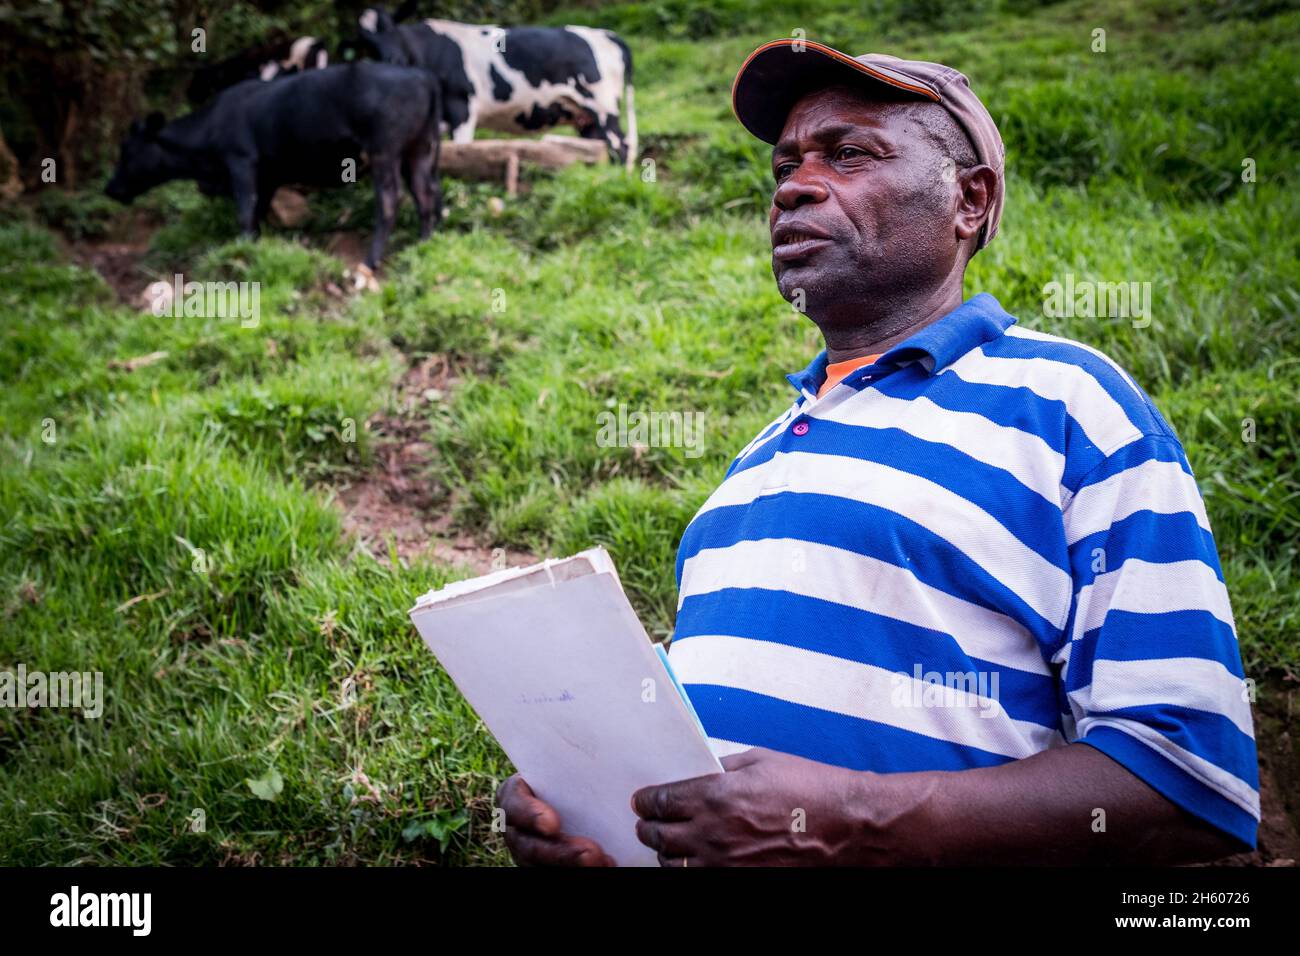 Settembre 2017. Simeo Ntawuruhunga ha ricevuto una mucca dalla Nkuringo Community Conservation and Development Foundation (NCCDF) nell'ambito del loro programma di giovenche. Egli allevia la mucca, mantiene il vitello così cominciando a costruire il suo gregge, e passa la vacca originale al prossimo in linea nel programma giovenca. Ora ha 6 mucche che che producono latte che può vendere localmente. I tori nati vengono venduti per la carne. Nkuringo, Uganda. Foto Stock